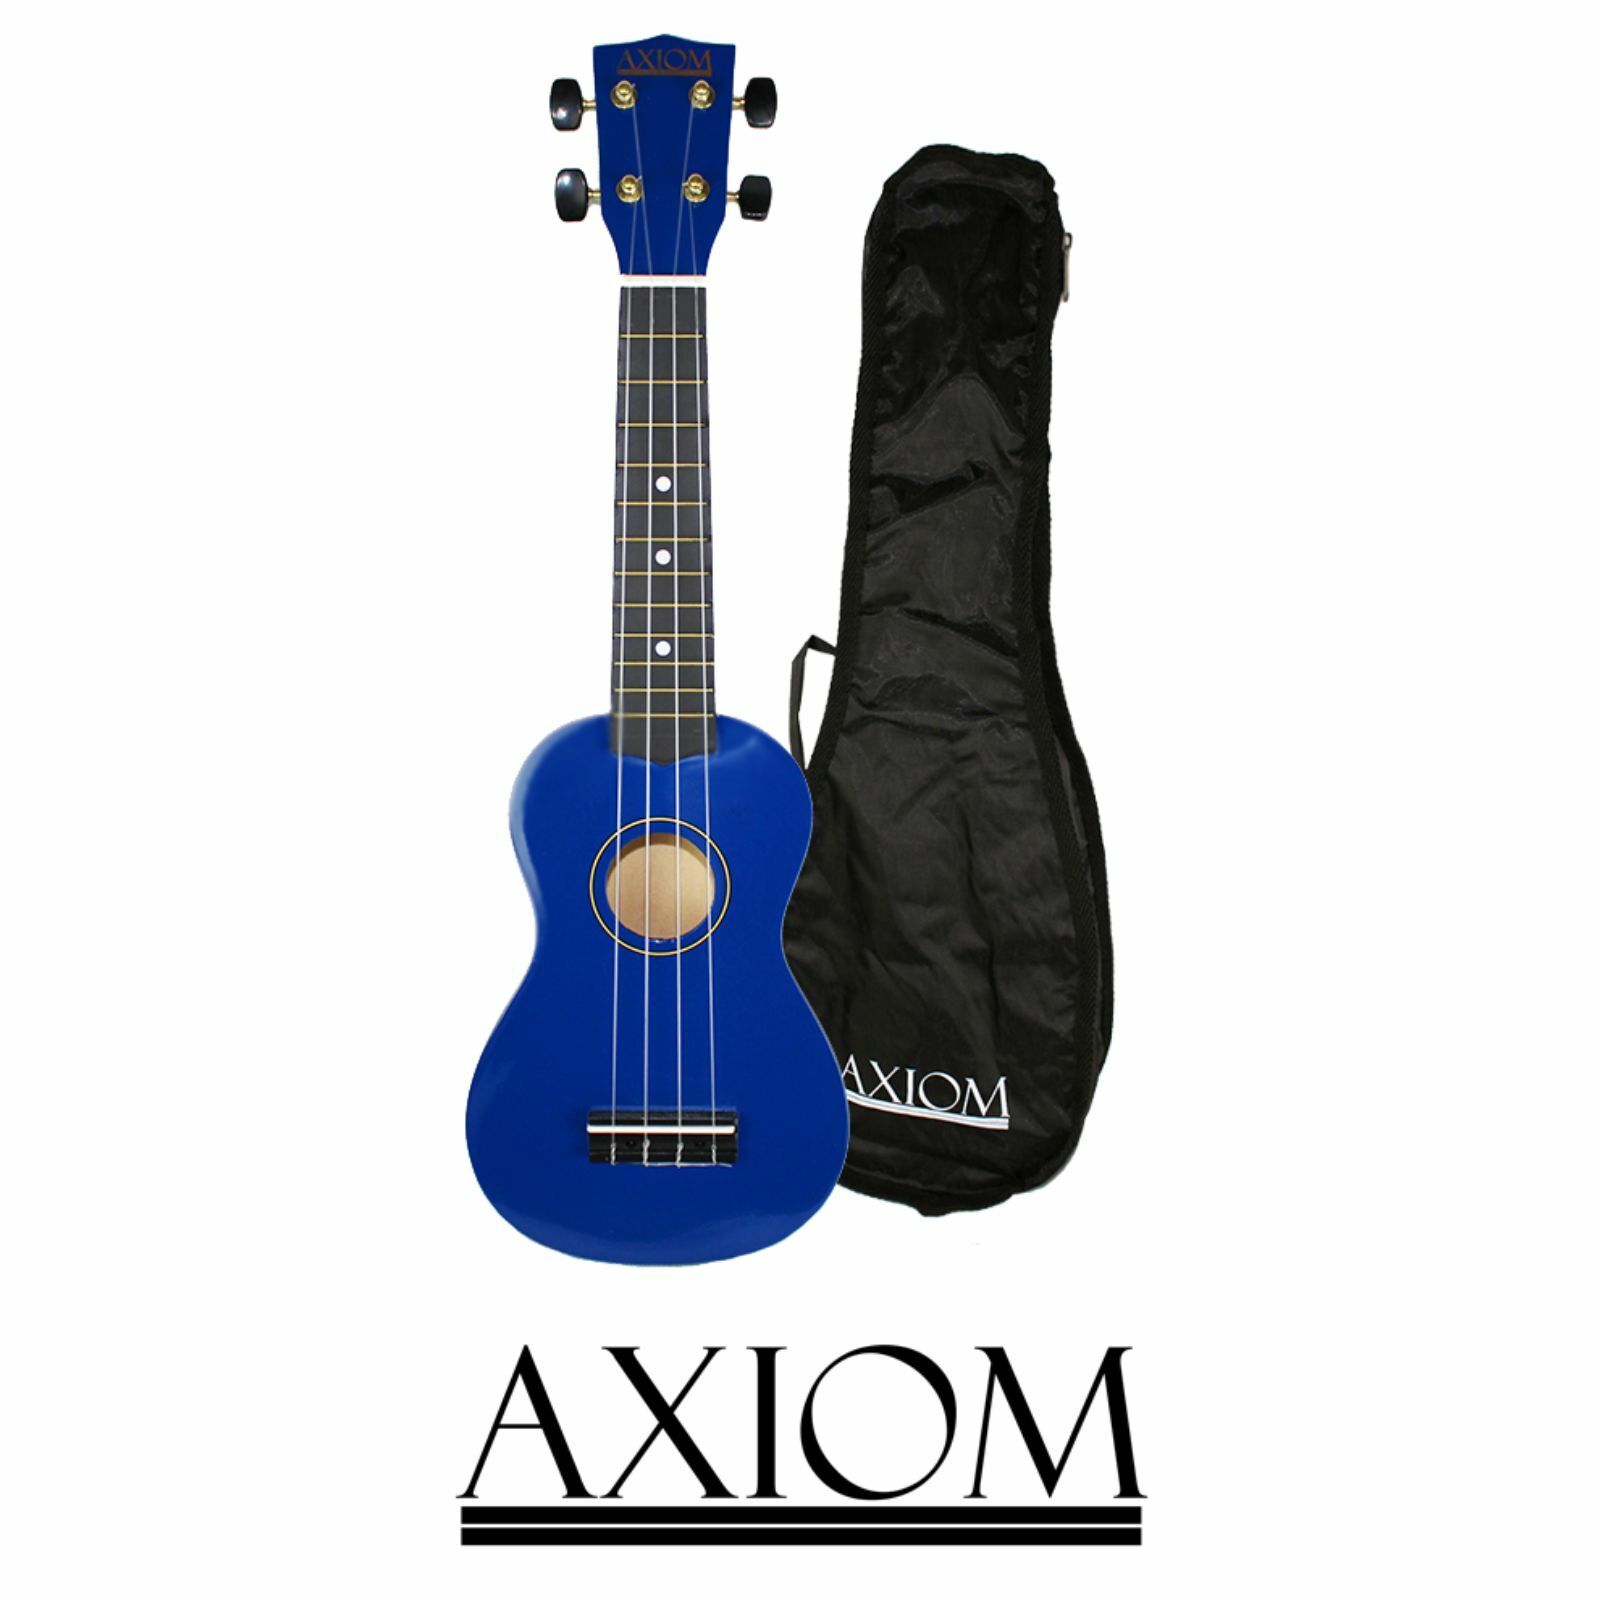 Axiom Spectrum Soprano Ukulele - Blue - with Bag